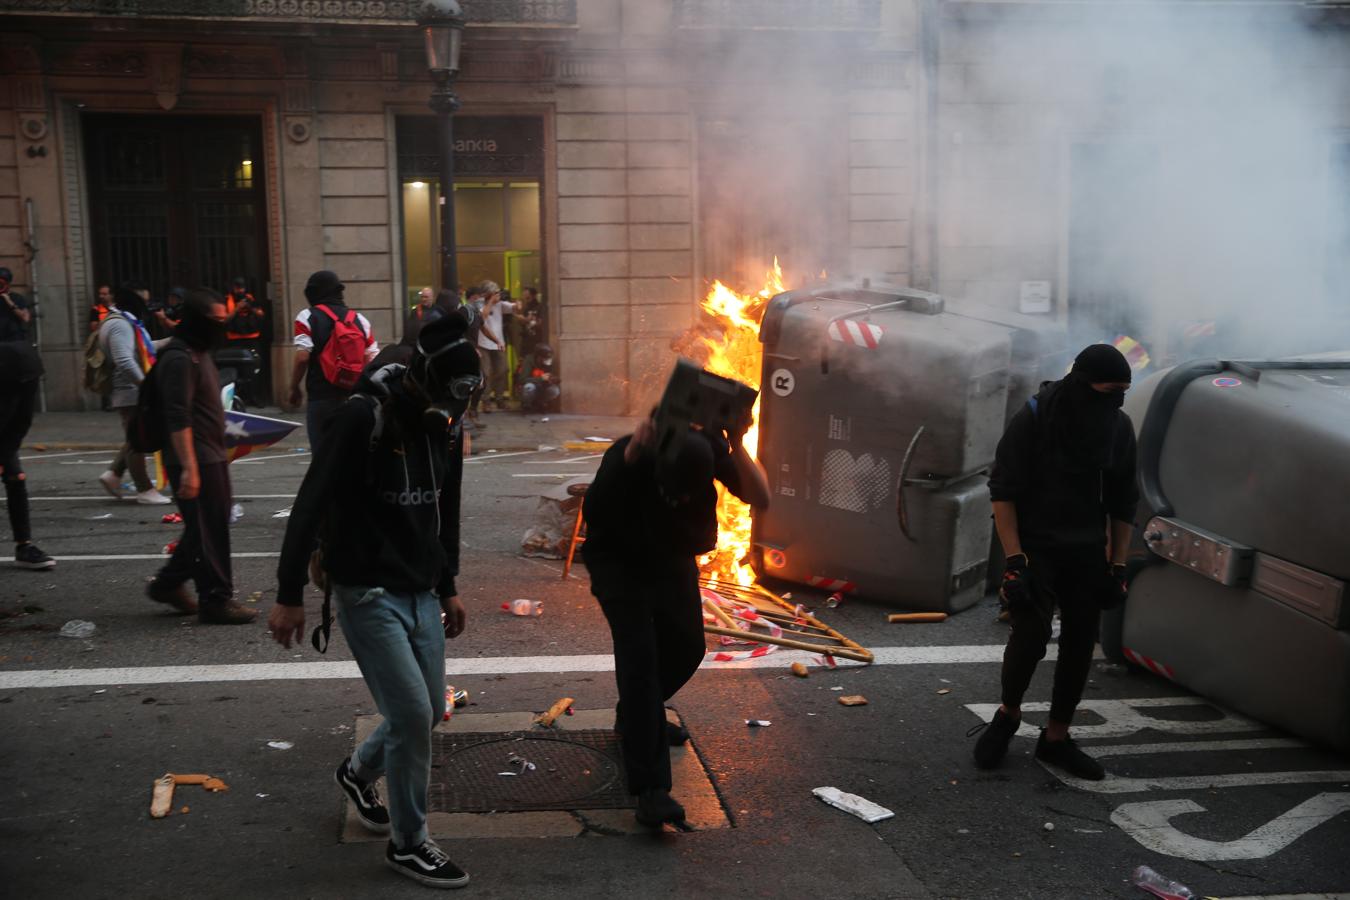 Vea las imágenes del fotógrafo de ABC a pie de barricada en los disturbios de Barcelona